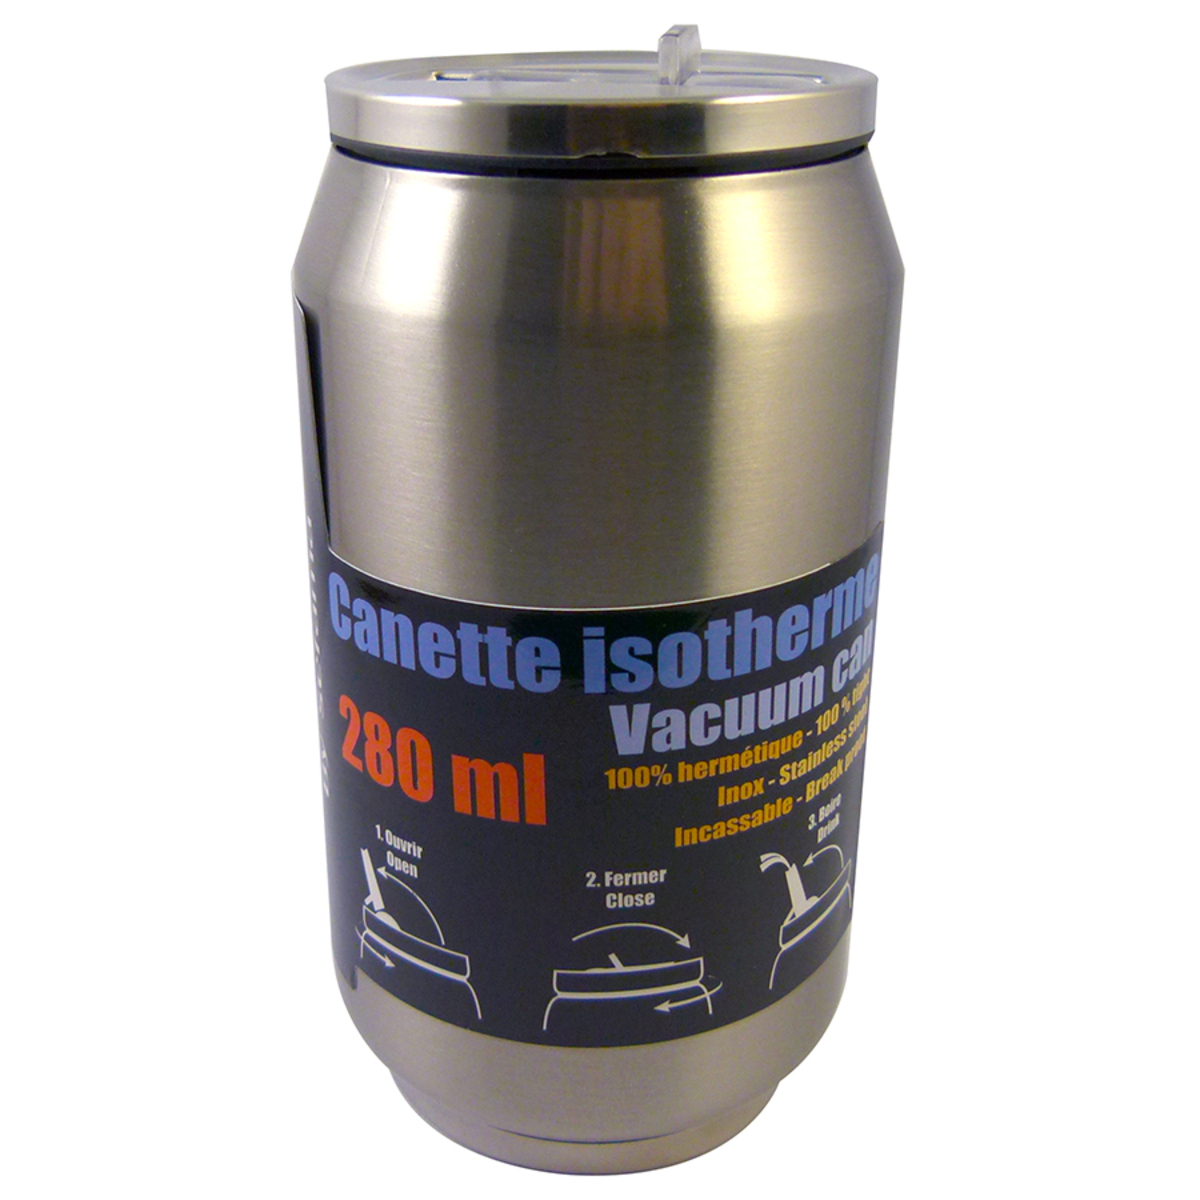 Canette isotherme argentée en inox 280 ml